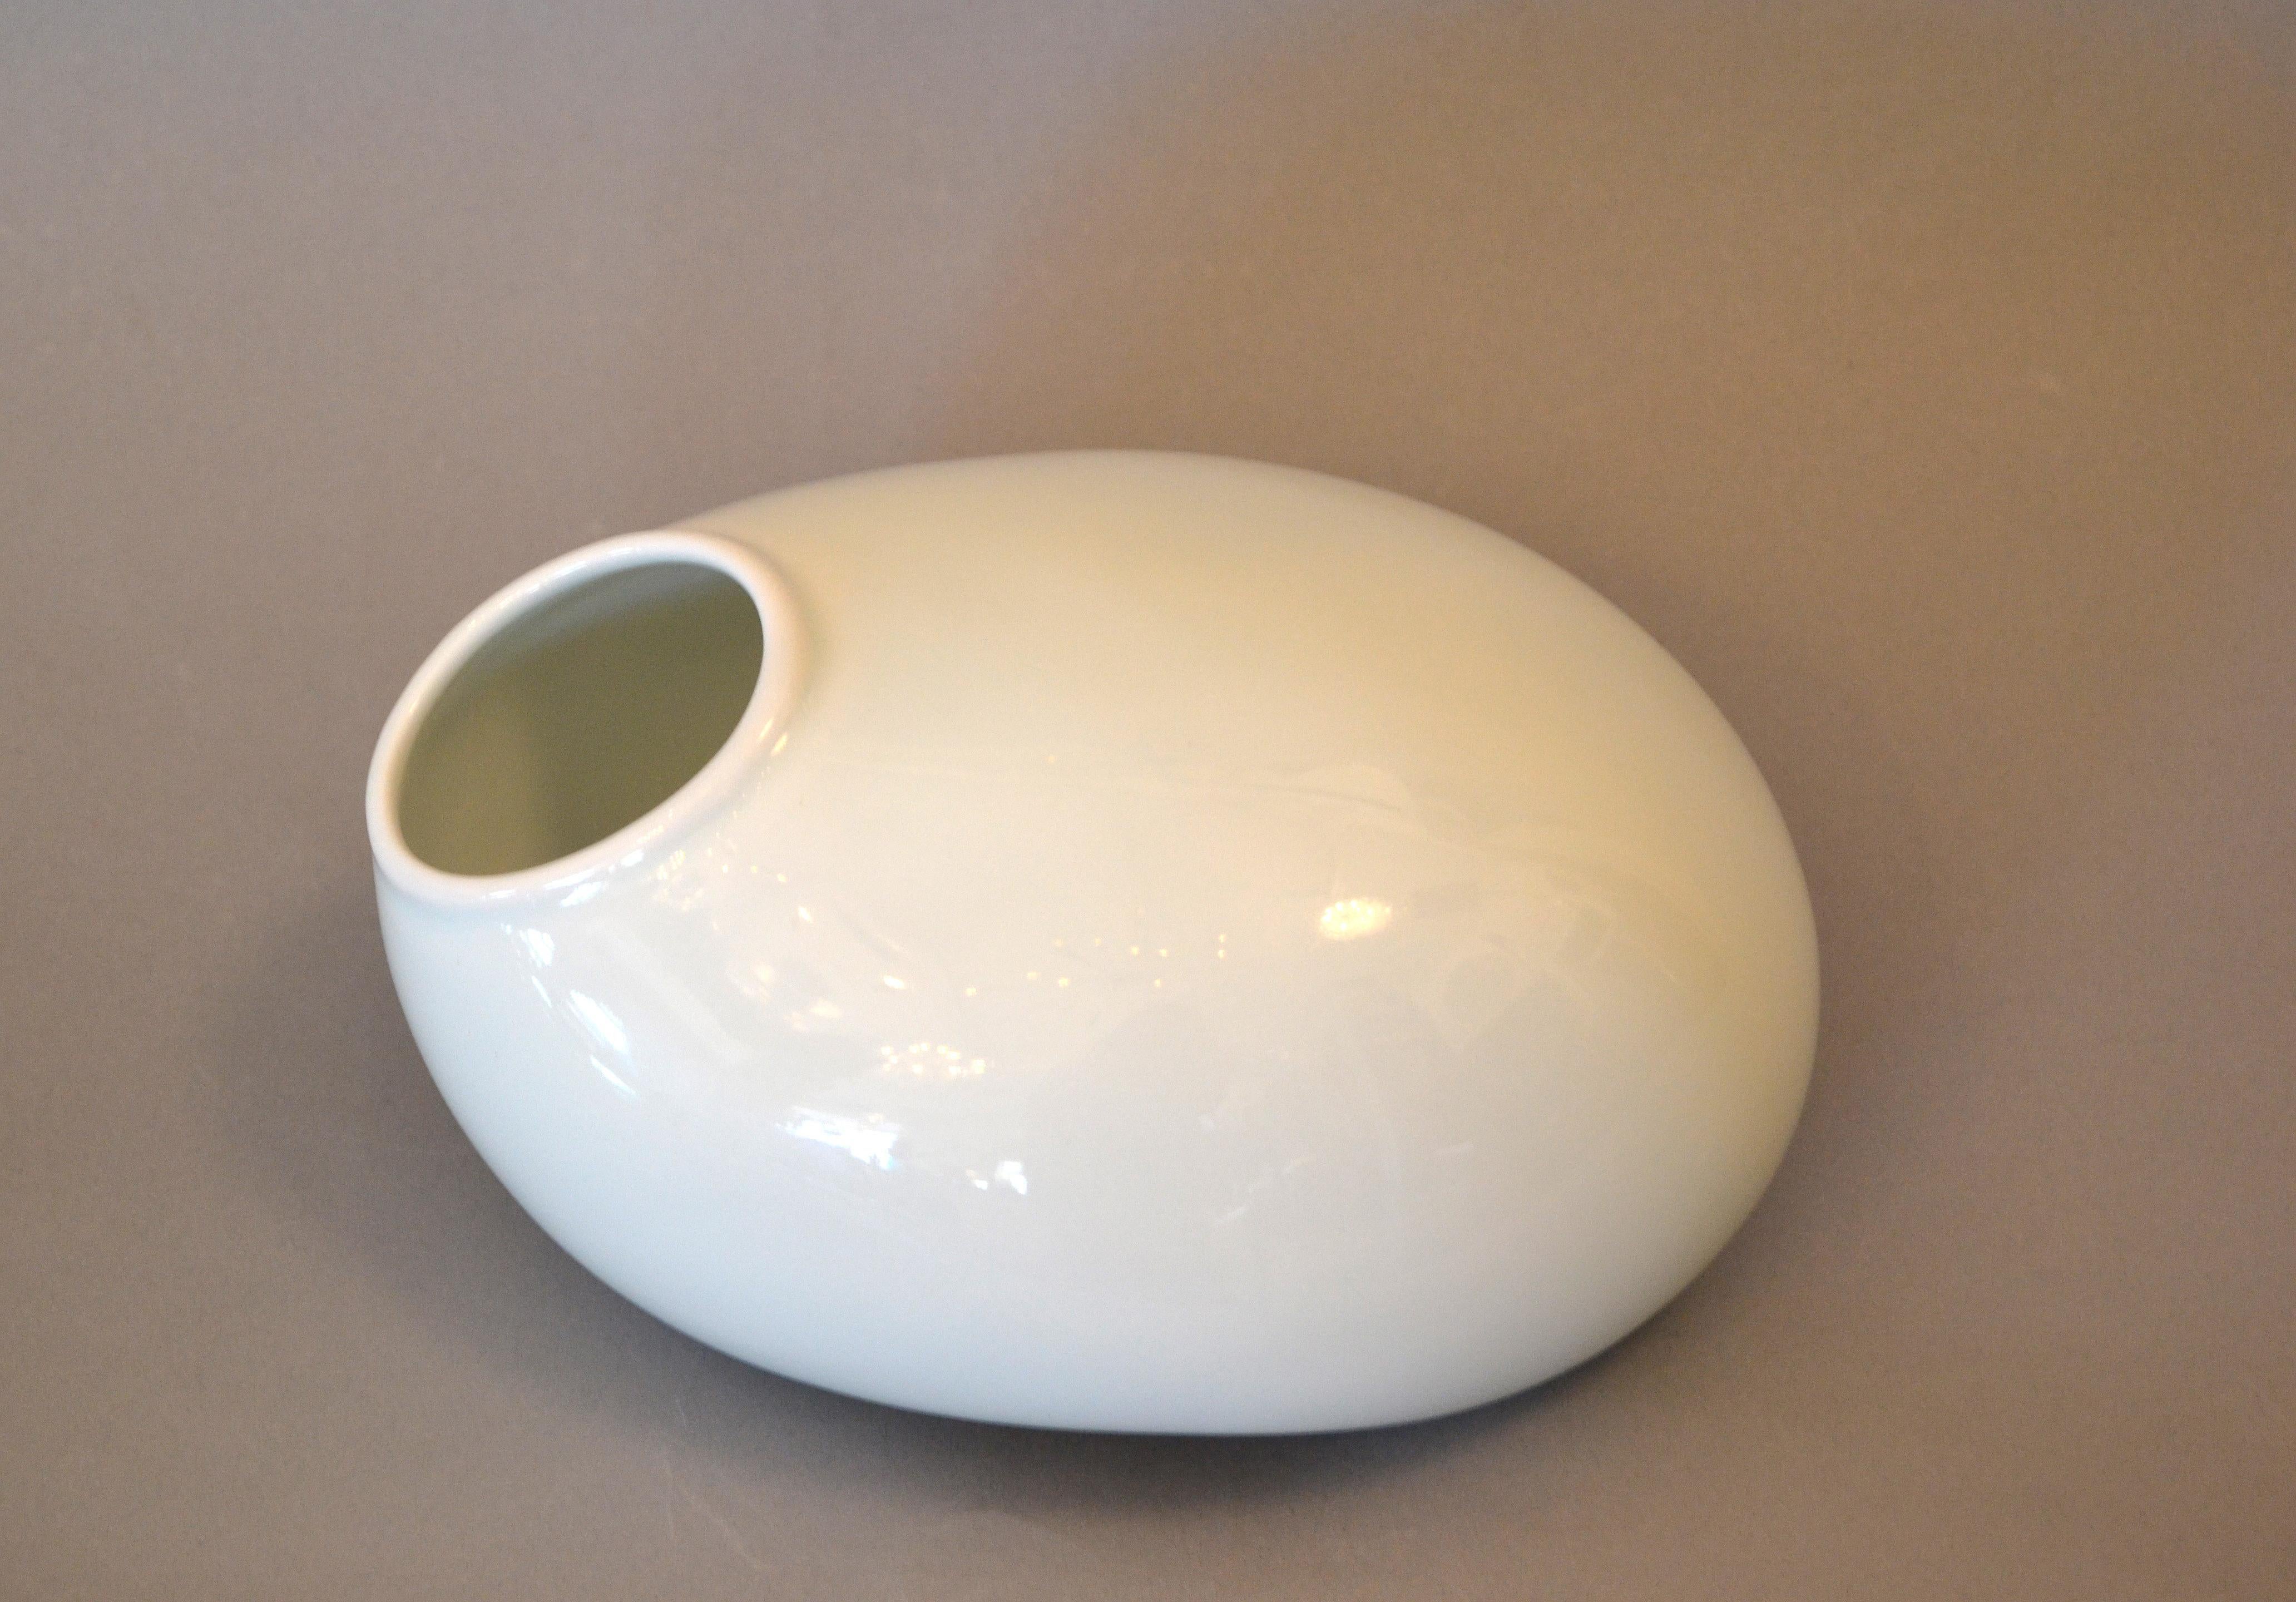 Chinese Organic Asian Modern White Ceramic Water Bag Vase Made by Spin Ceramics Shanghai